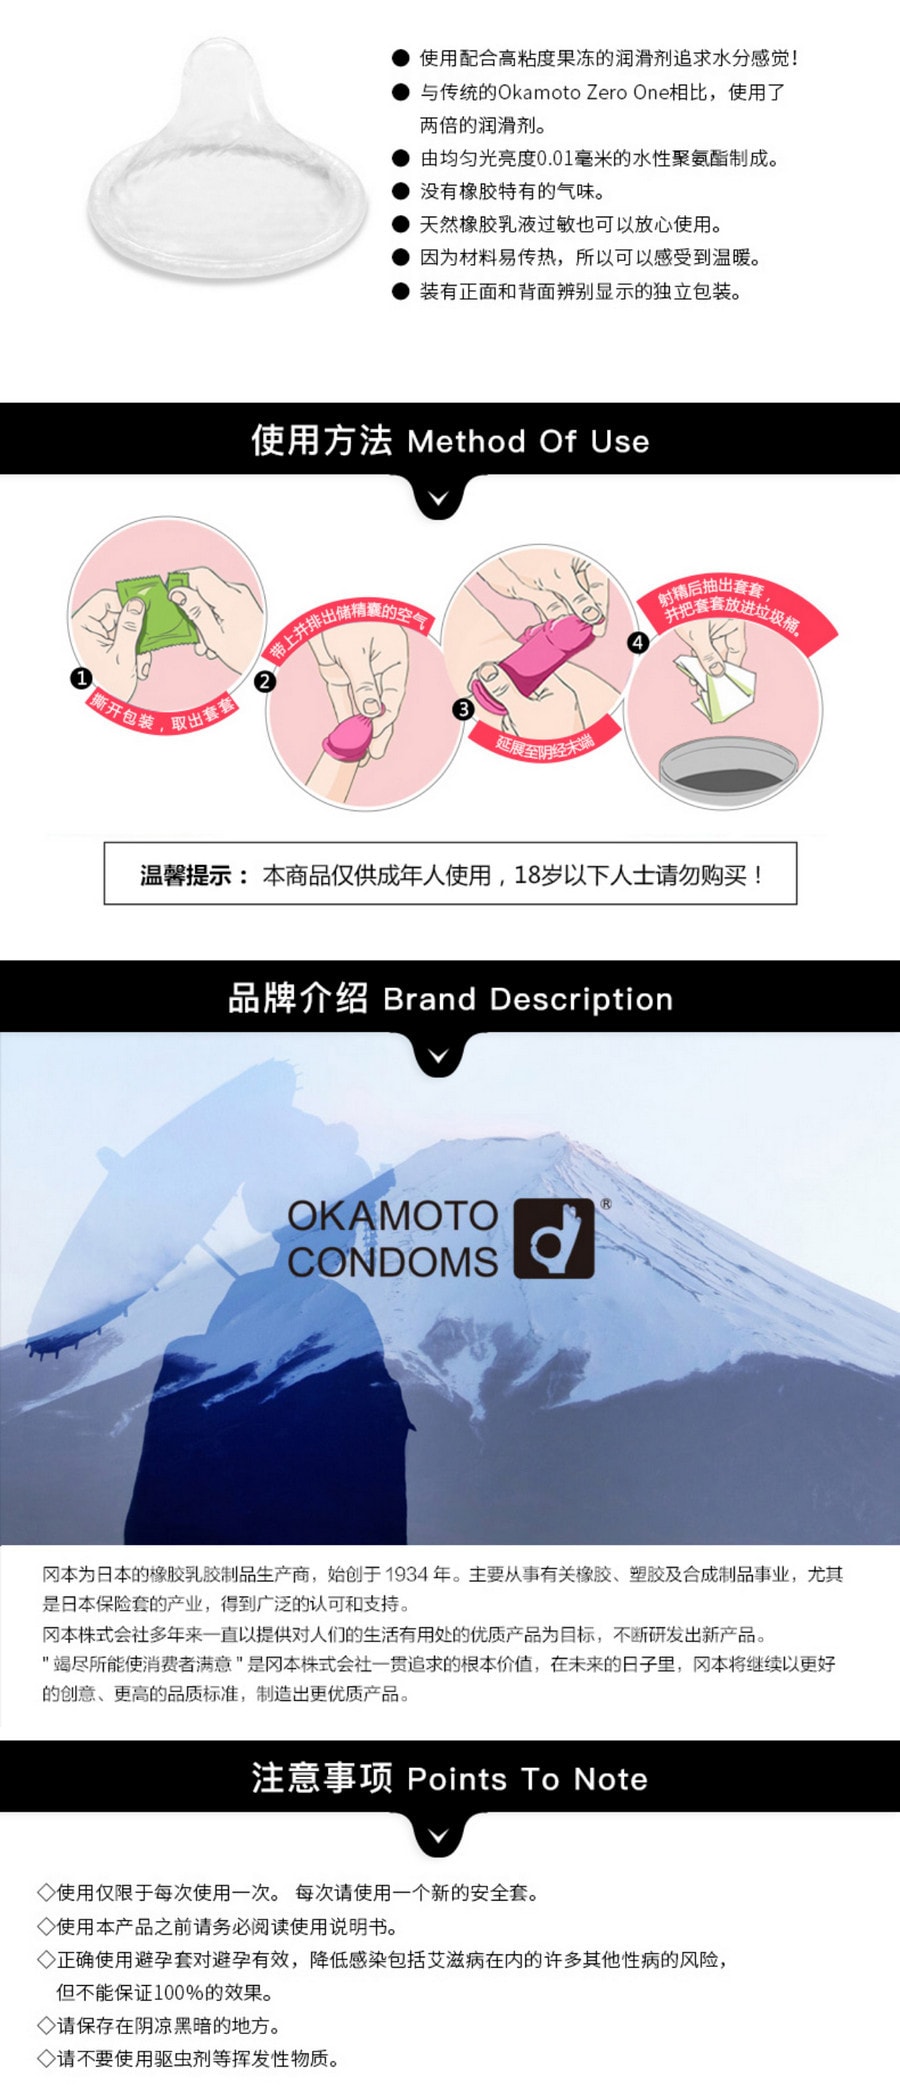 【日本直邮】冈本001超薄避孕套 200%润滑亲肤安全套 3支